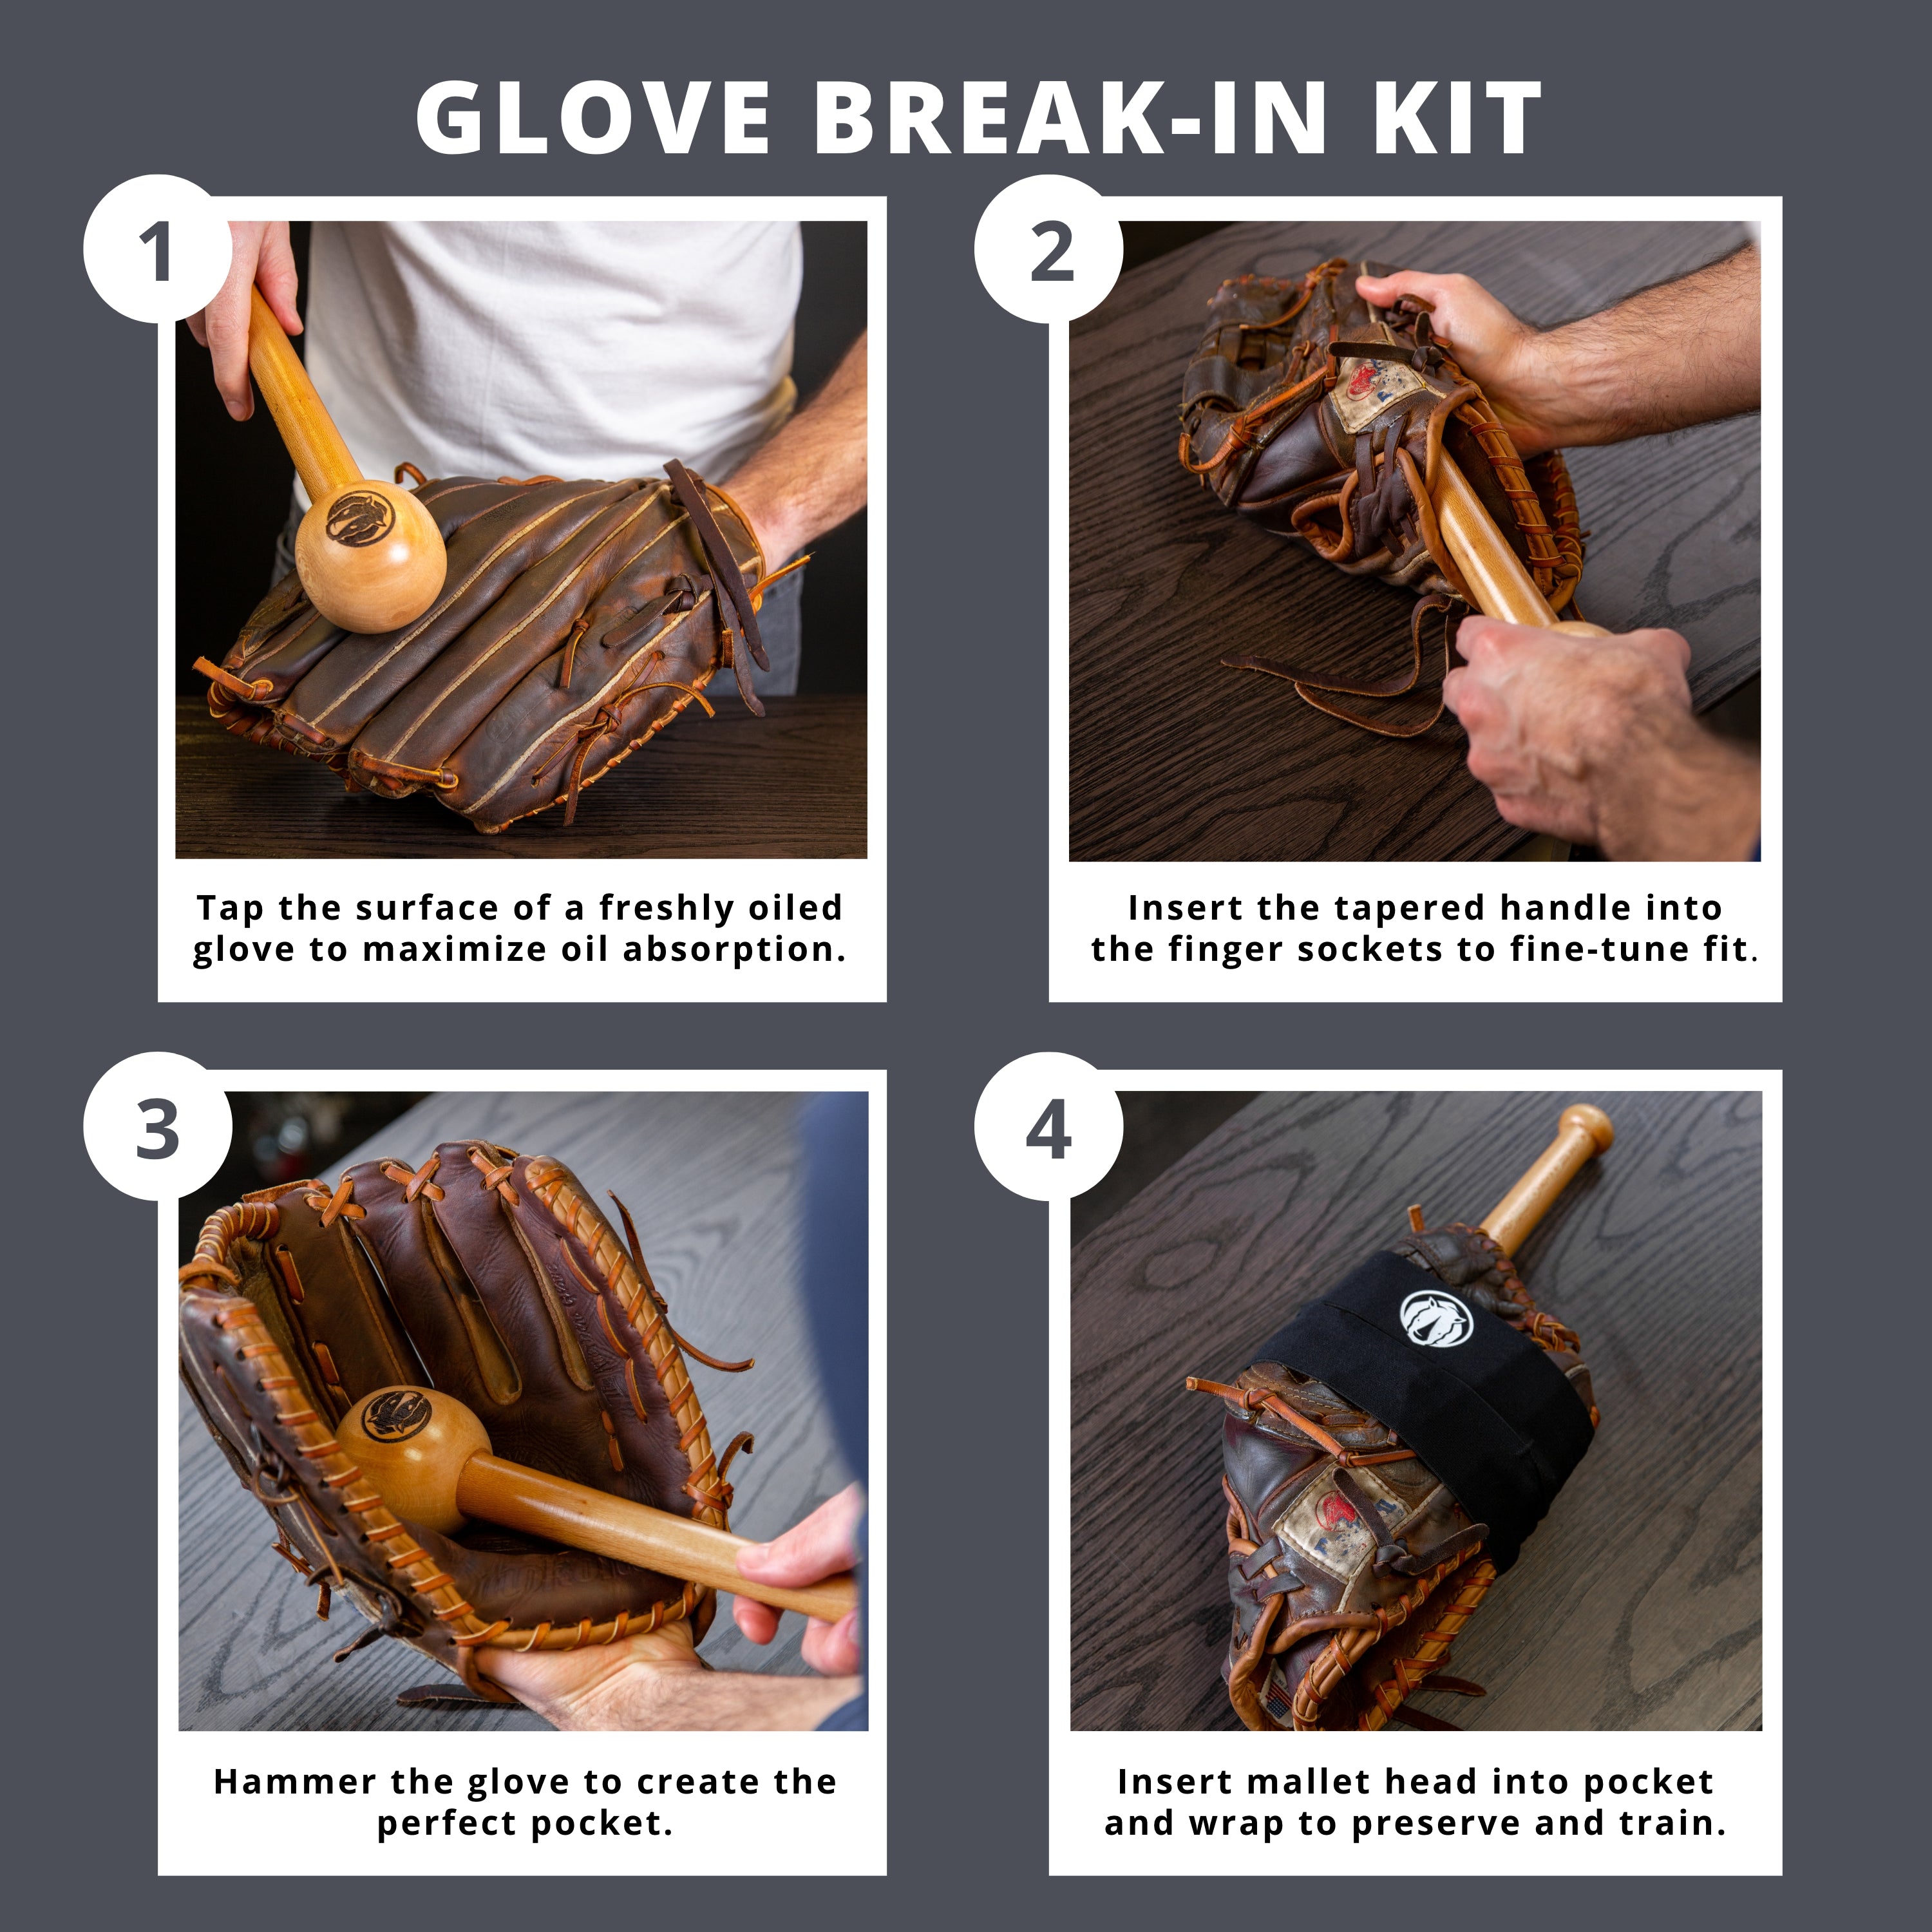 How to Break in a Baseball Glove